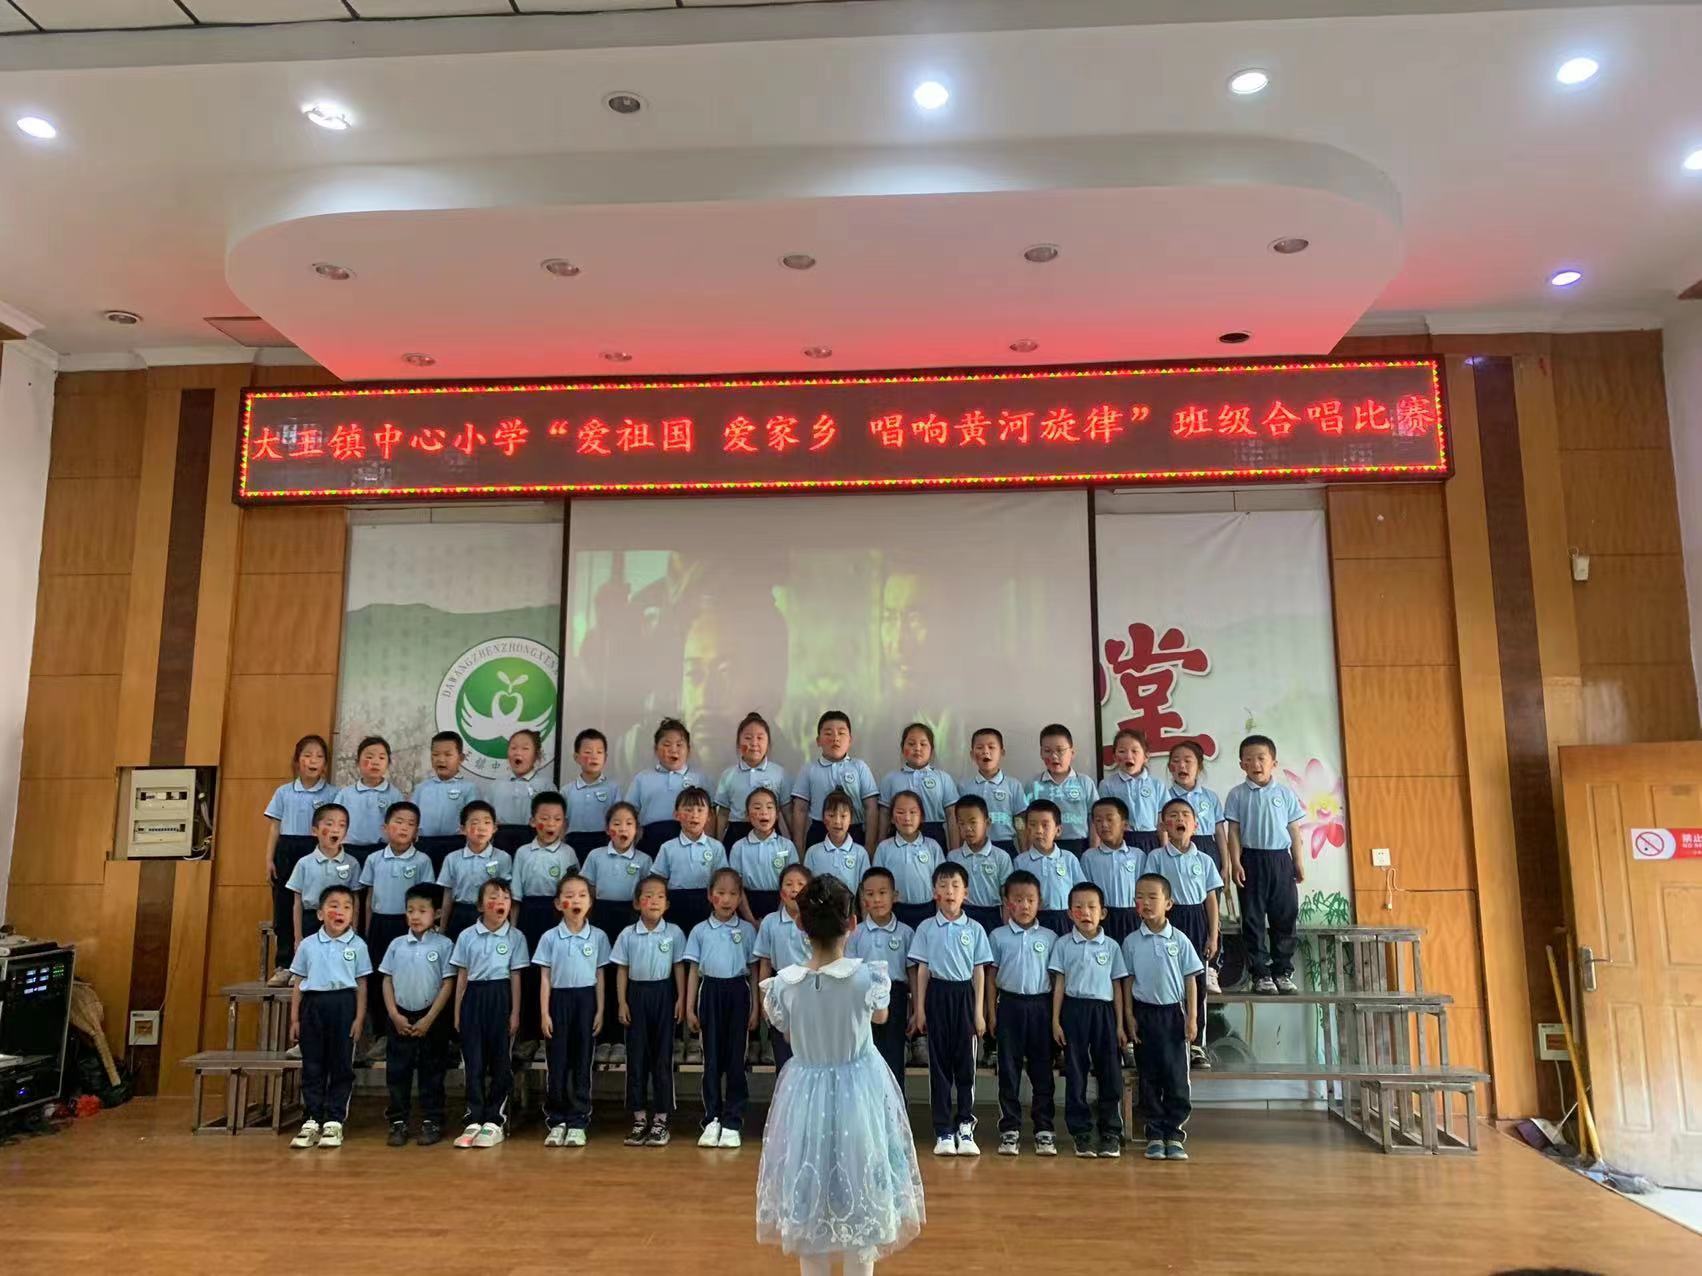 爱祖国、爱家乡，唱响黄河旋律---广饶县大王镇中心小学第一届校园班级合唱节比赛